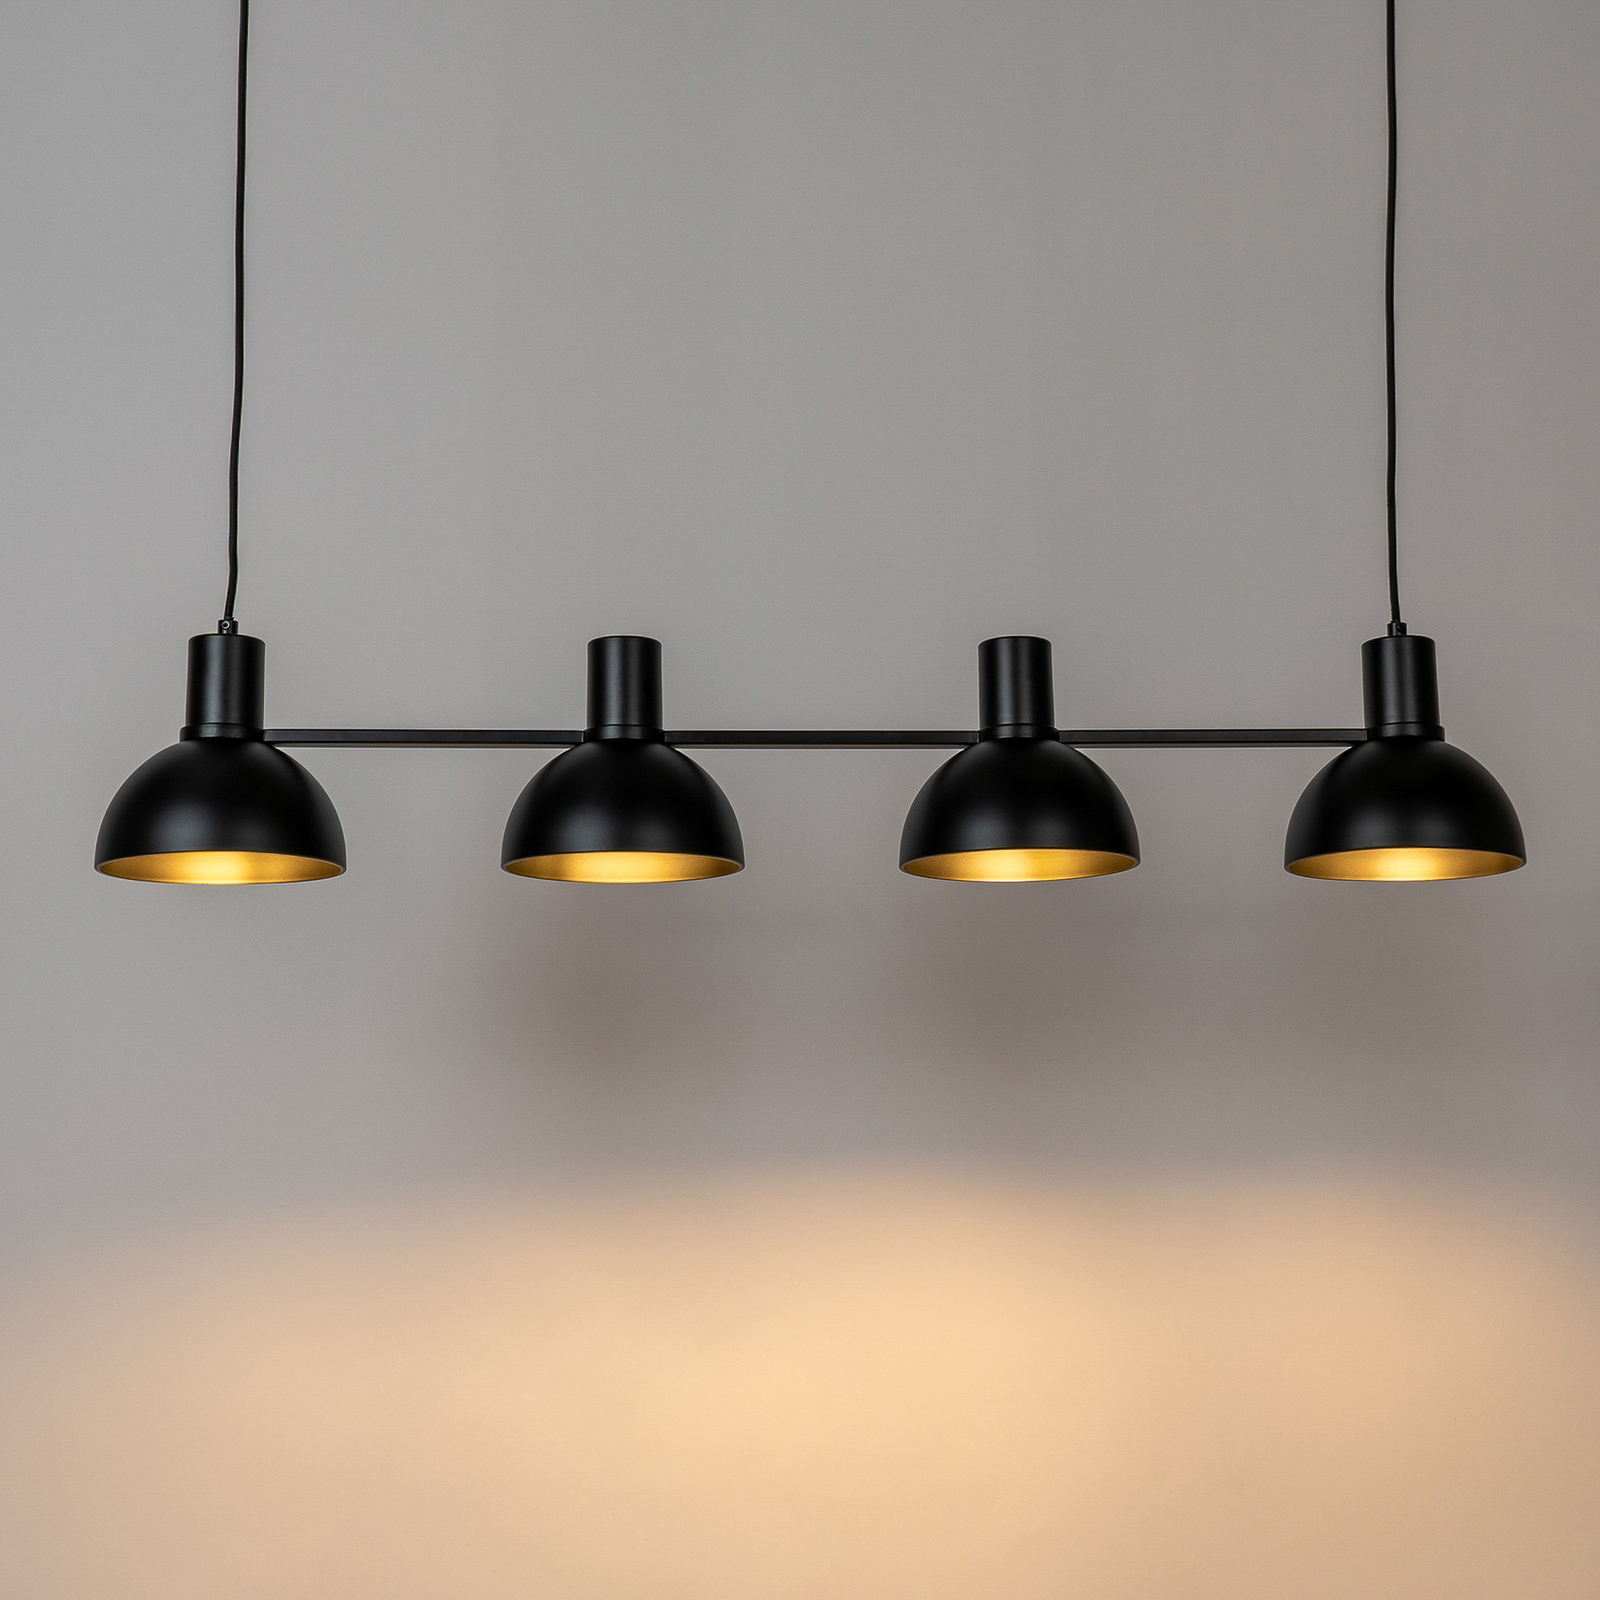 Závěsná lampa Lucande Mostrid, černá, čtyři světla